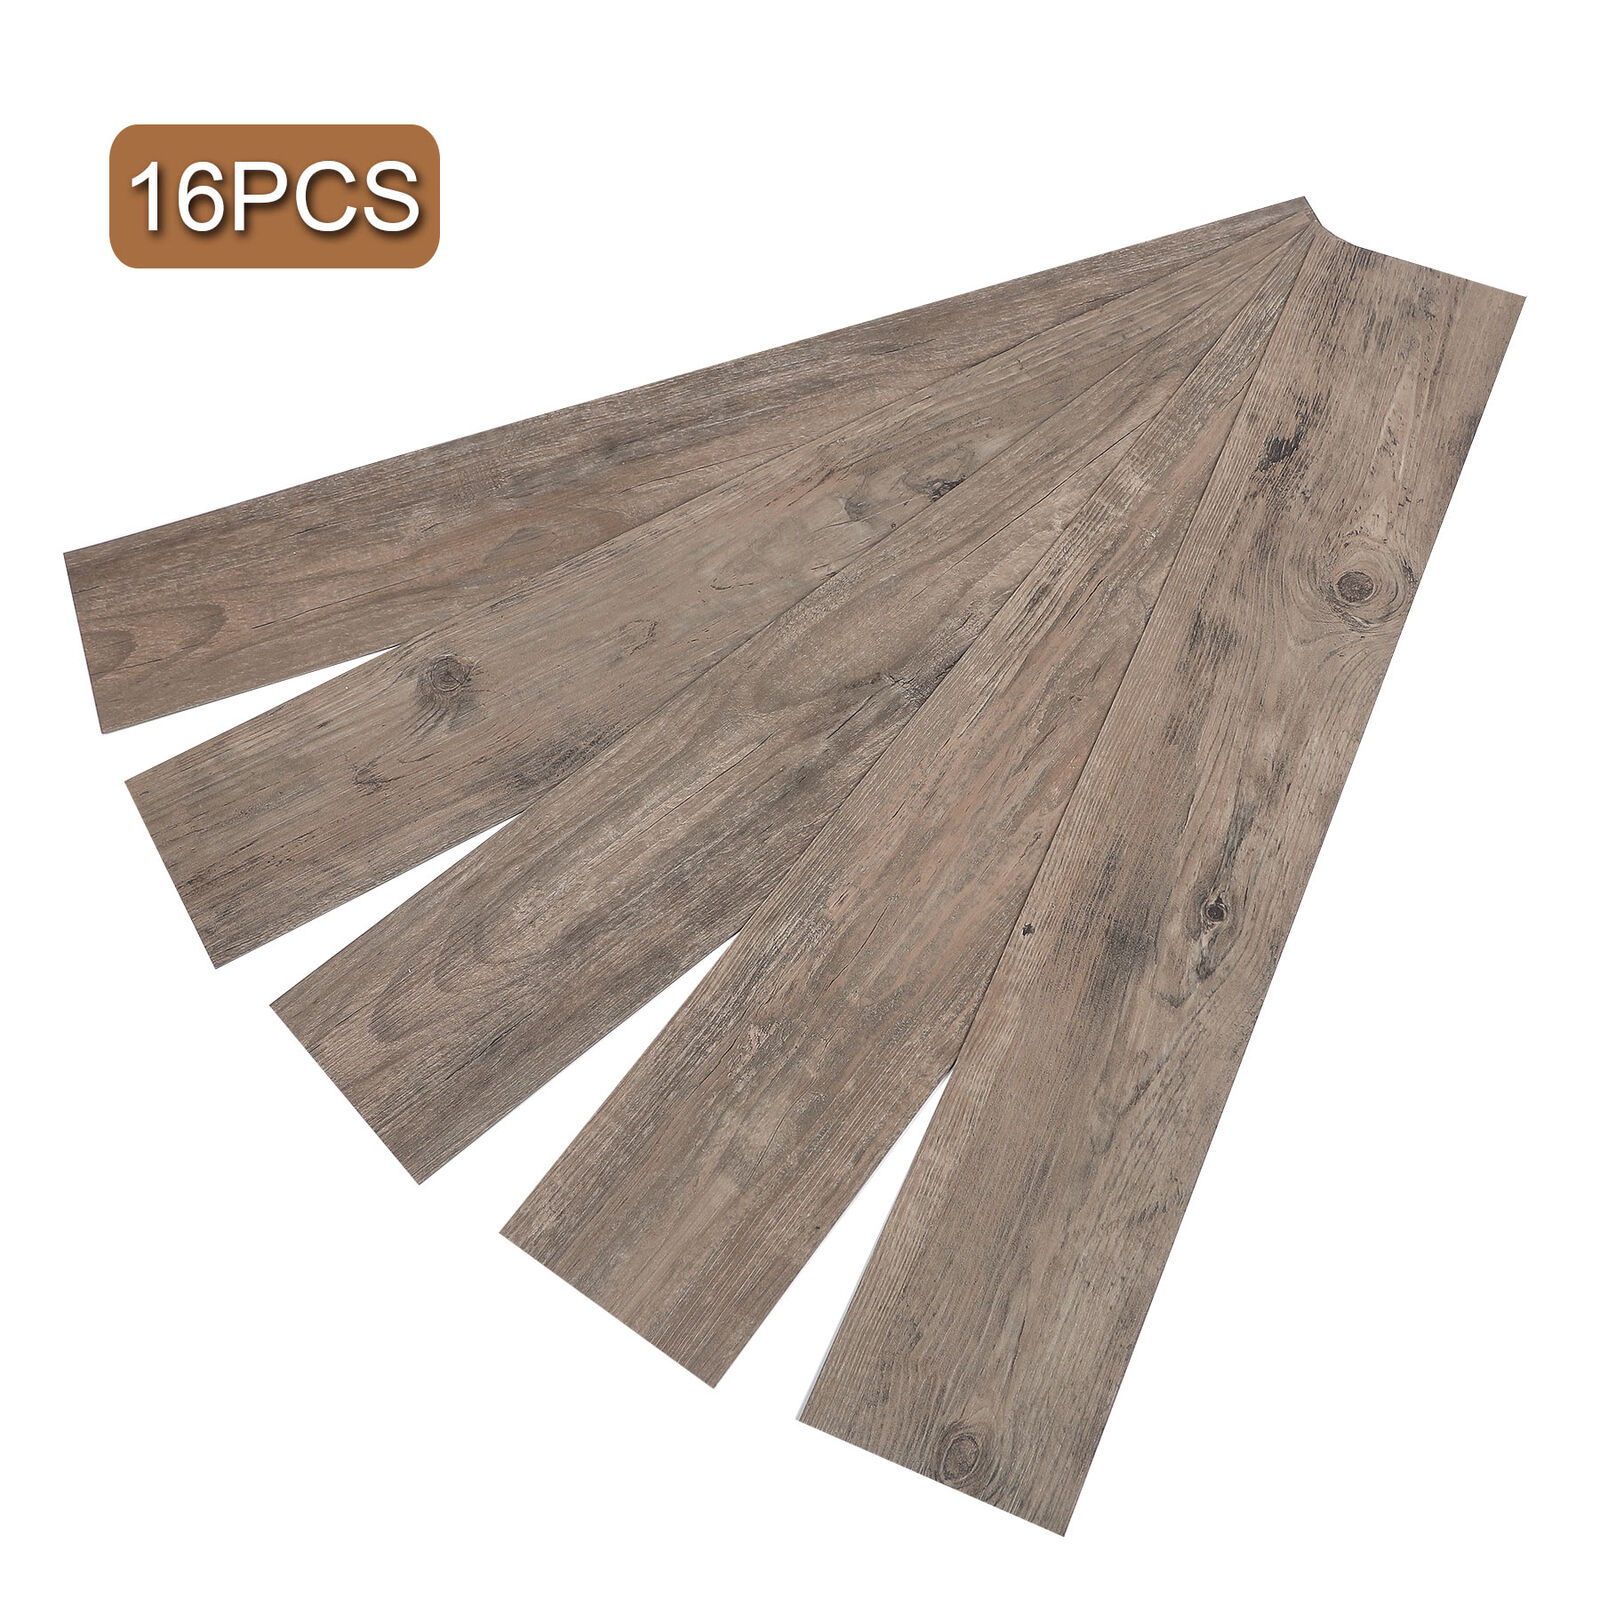 16pcs Vinyl Floor Planks Wood Tiles Home Furnishing Peel Stick Self Adhesive.